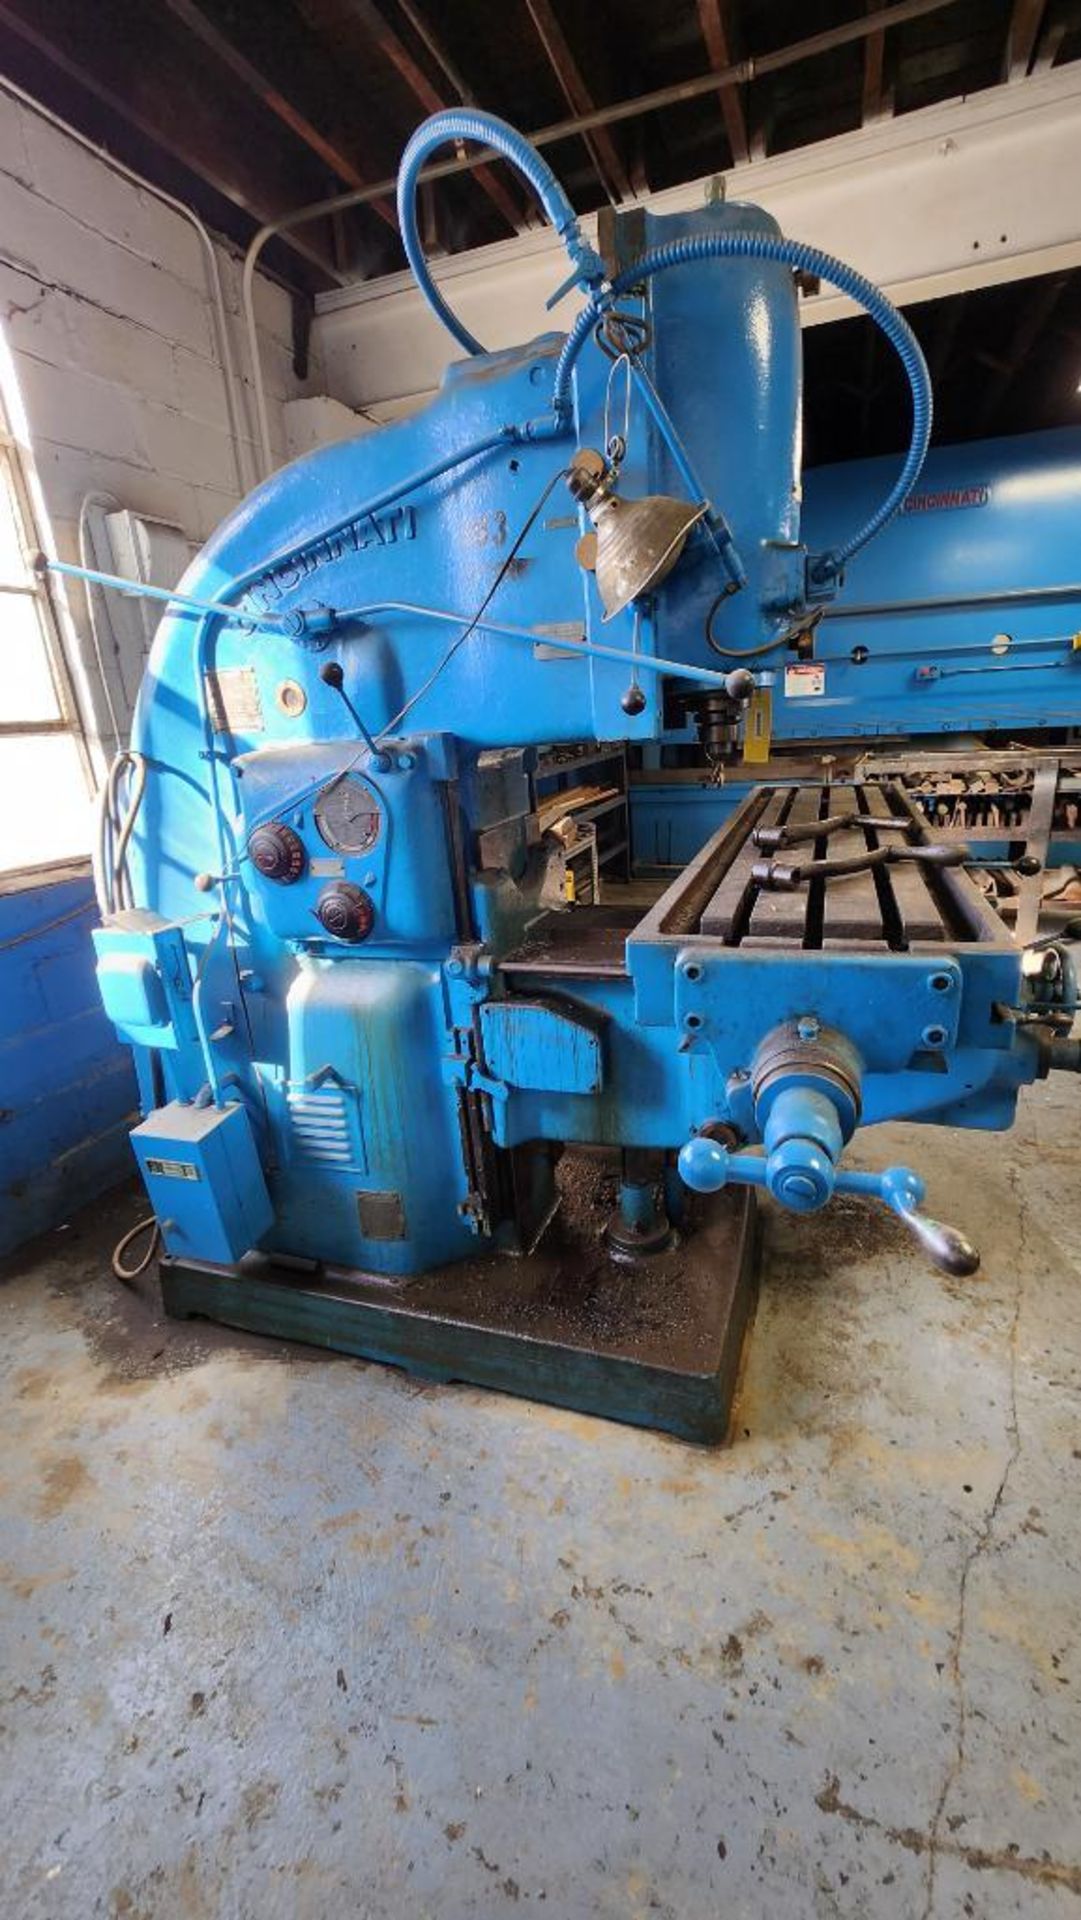 Cincinnati Milling Machine, No. 3, S/N 4A3VIL-389, 230 V, 3-Phase, 5 HP Video Link: Cincinnati Milli - Image 2 of 7